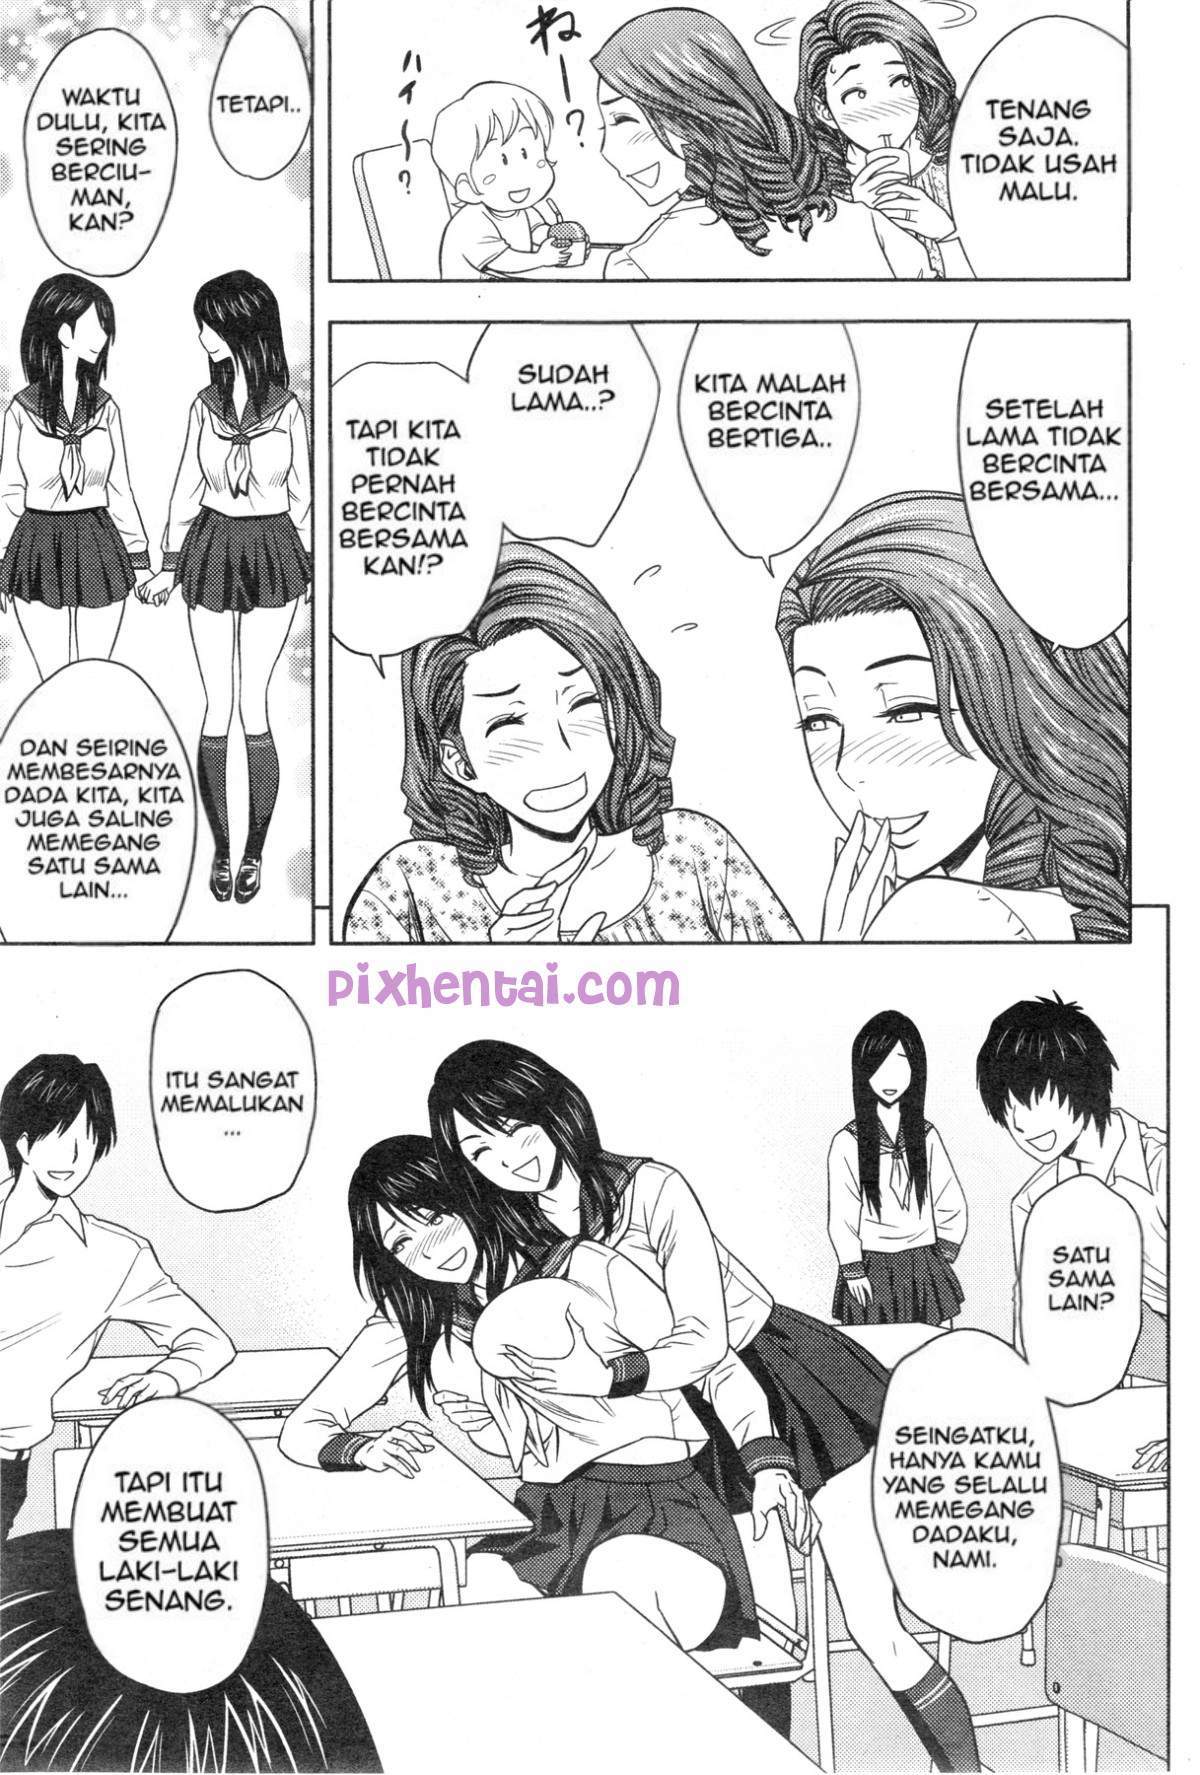 Komik hentai xxx manga sex bokep bercinta dengan saudara kembar 03